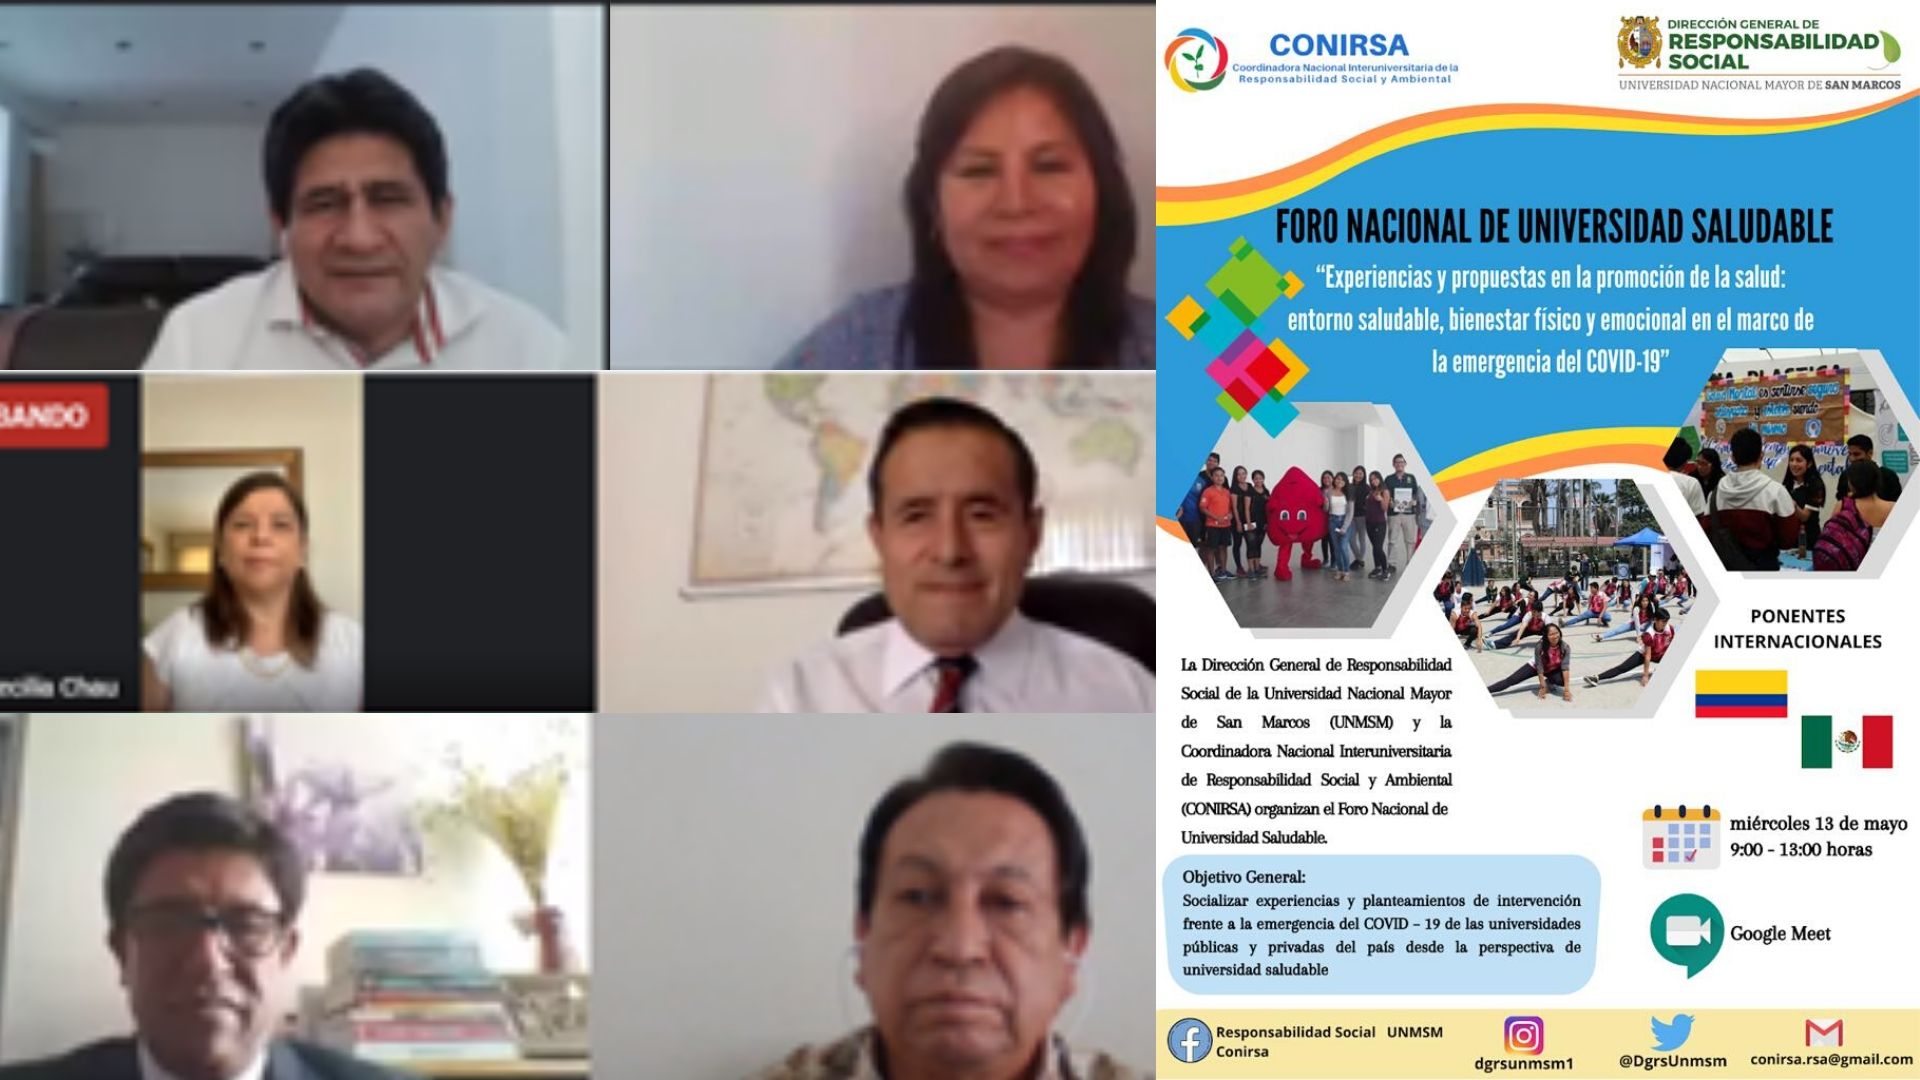 La Dirección General de Responsabilidad Social de la UNMSM organiza Foro Nacional de Universidad Saludable reuniendo a más de 32 universidades del Perú y el mundo para promover intervenciones de promoción de la salud en las comunidades universitarias